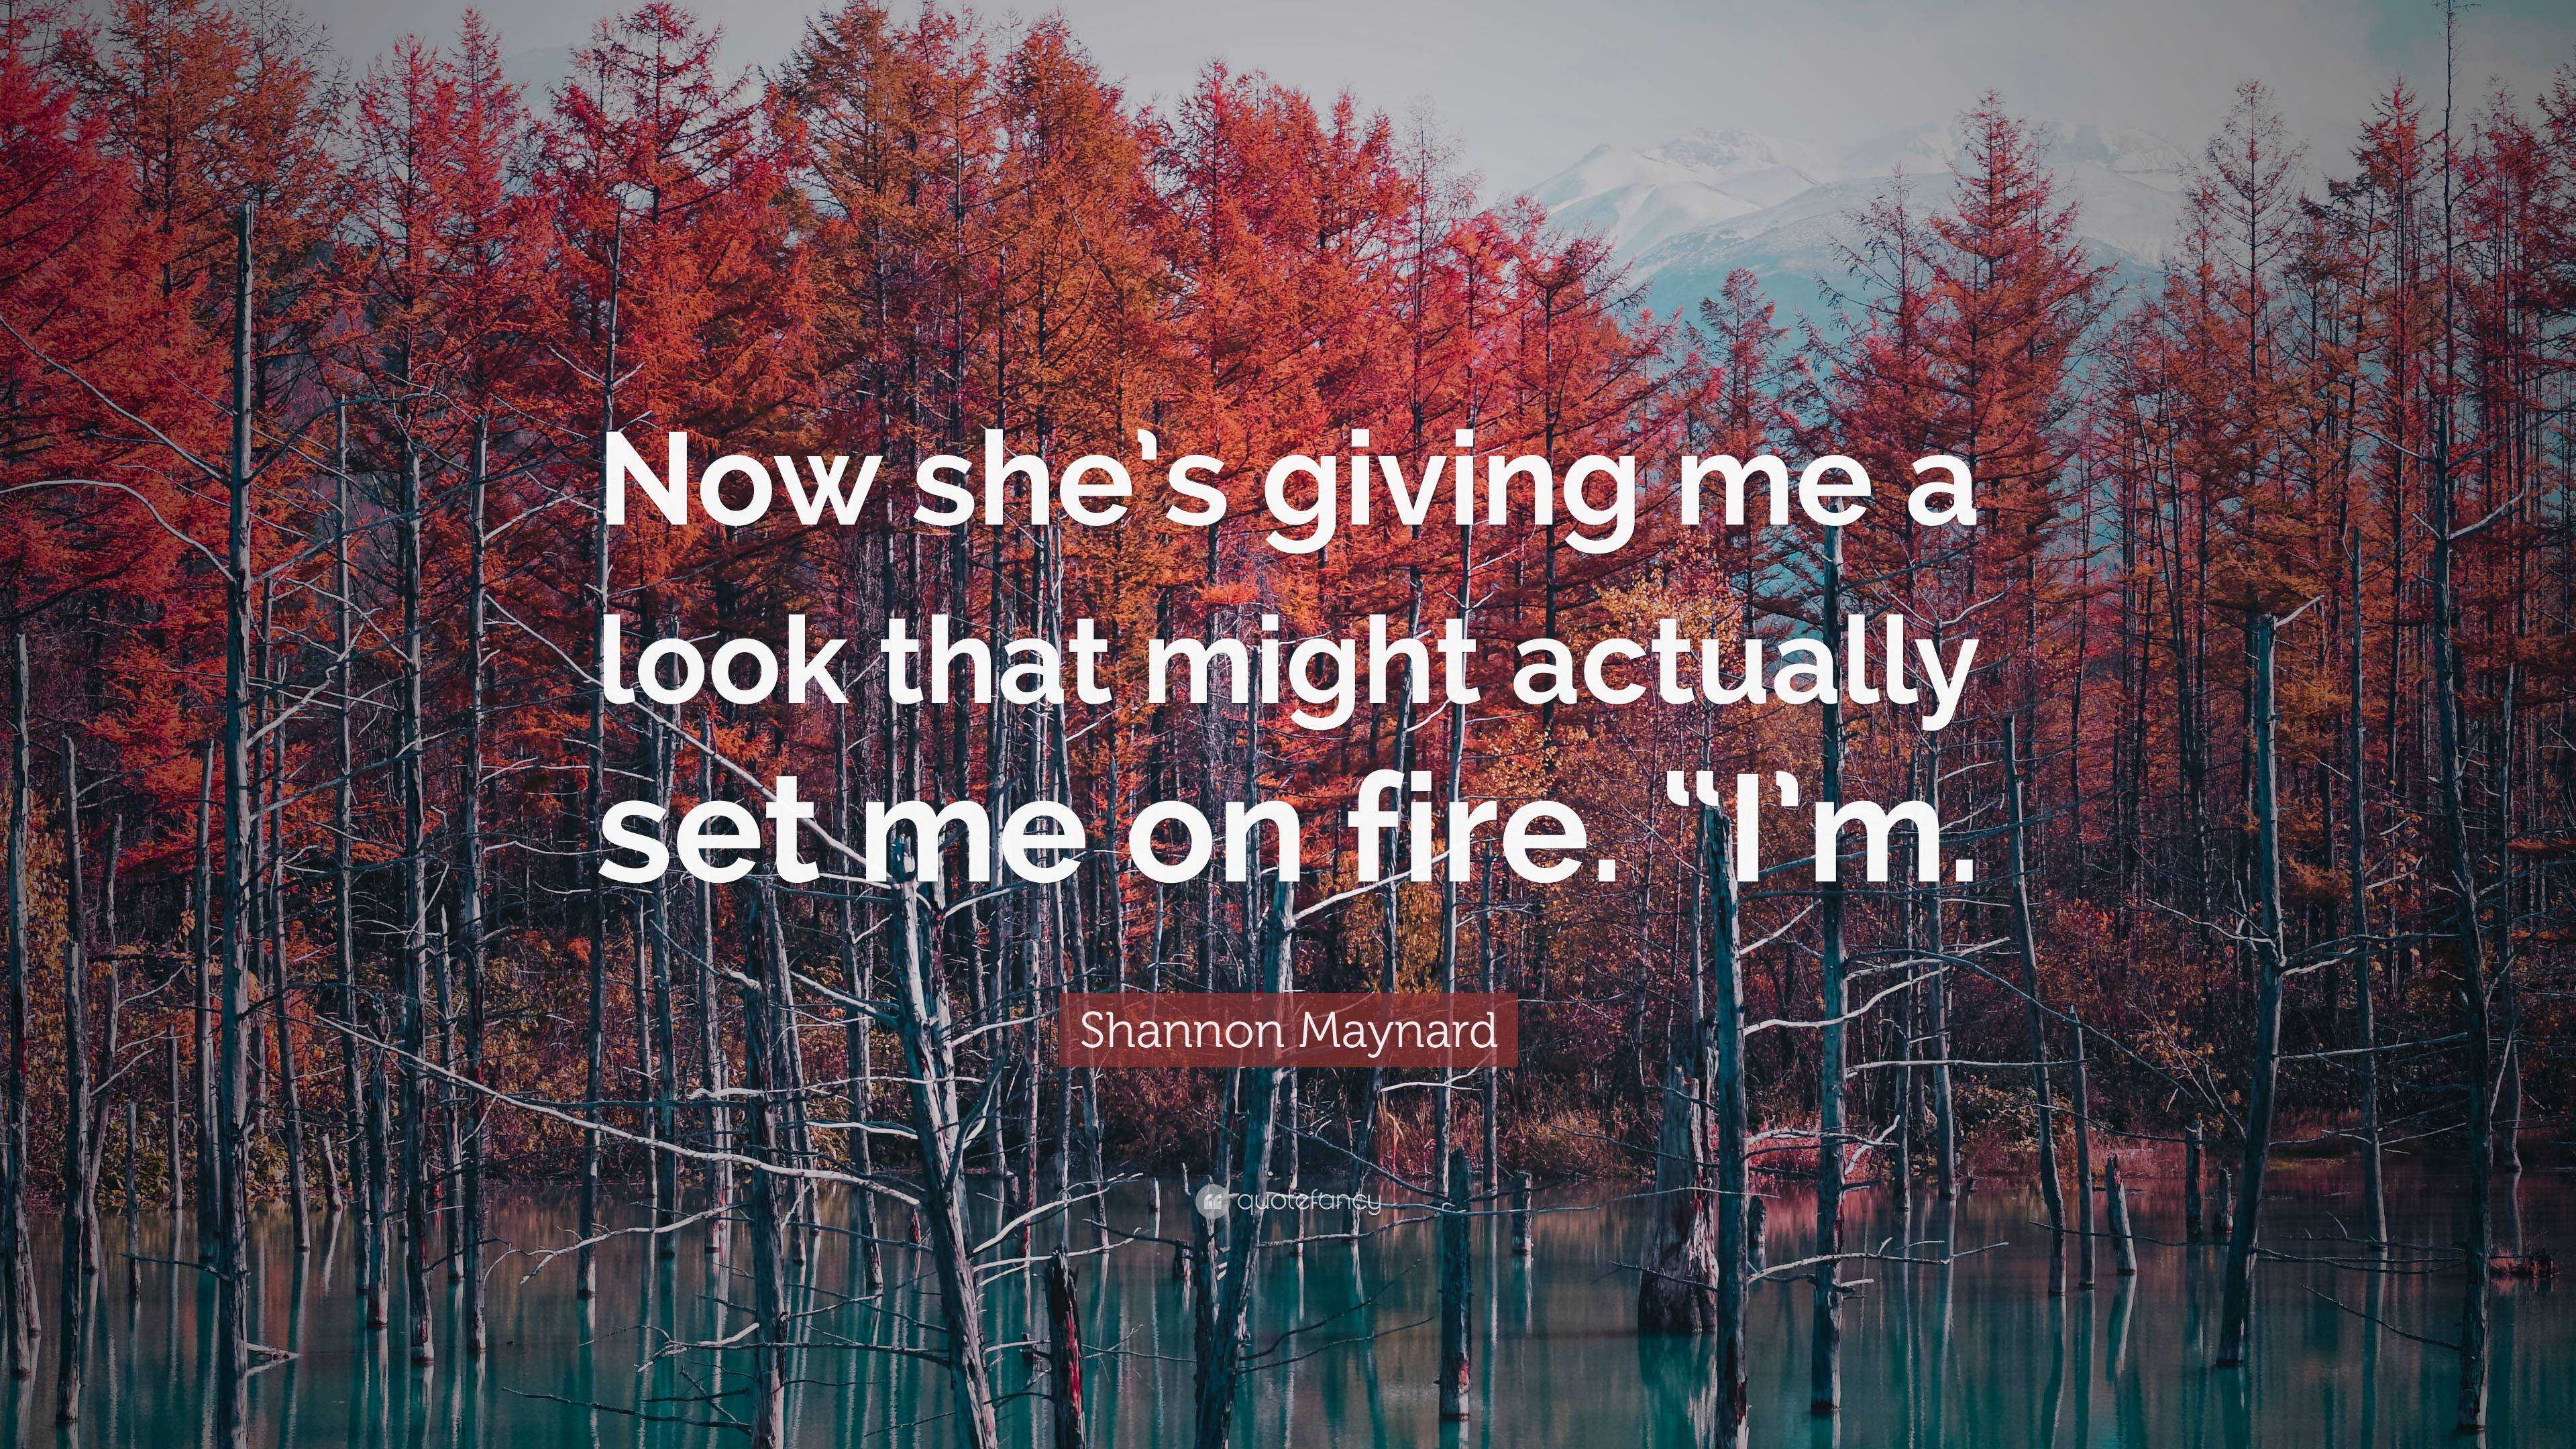 She sets me on fire